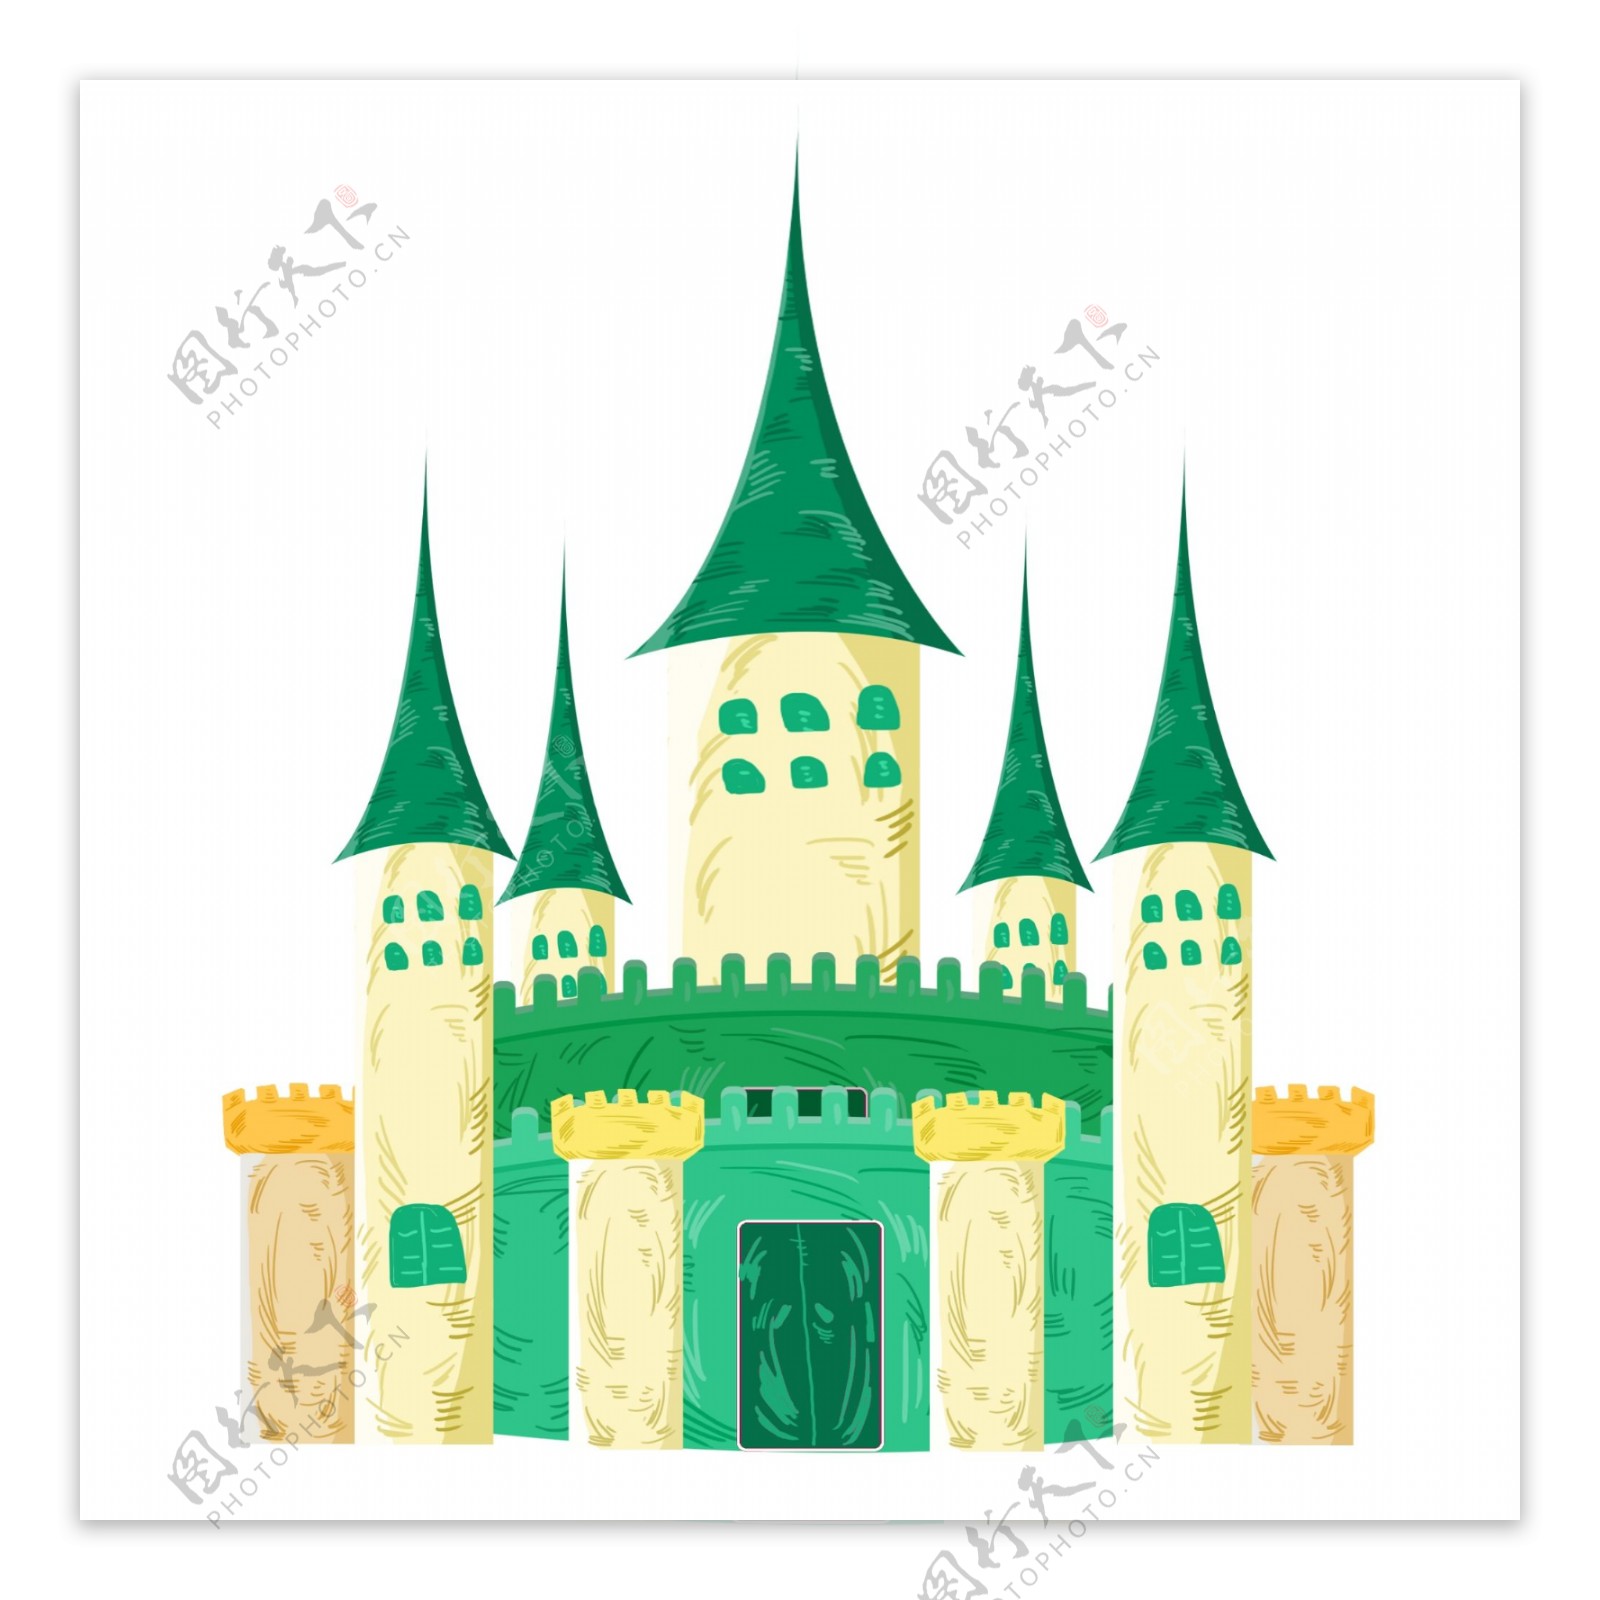 彩色儿童城堡建筑